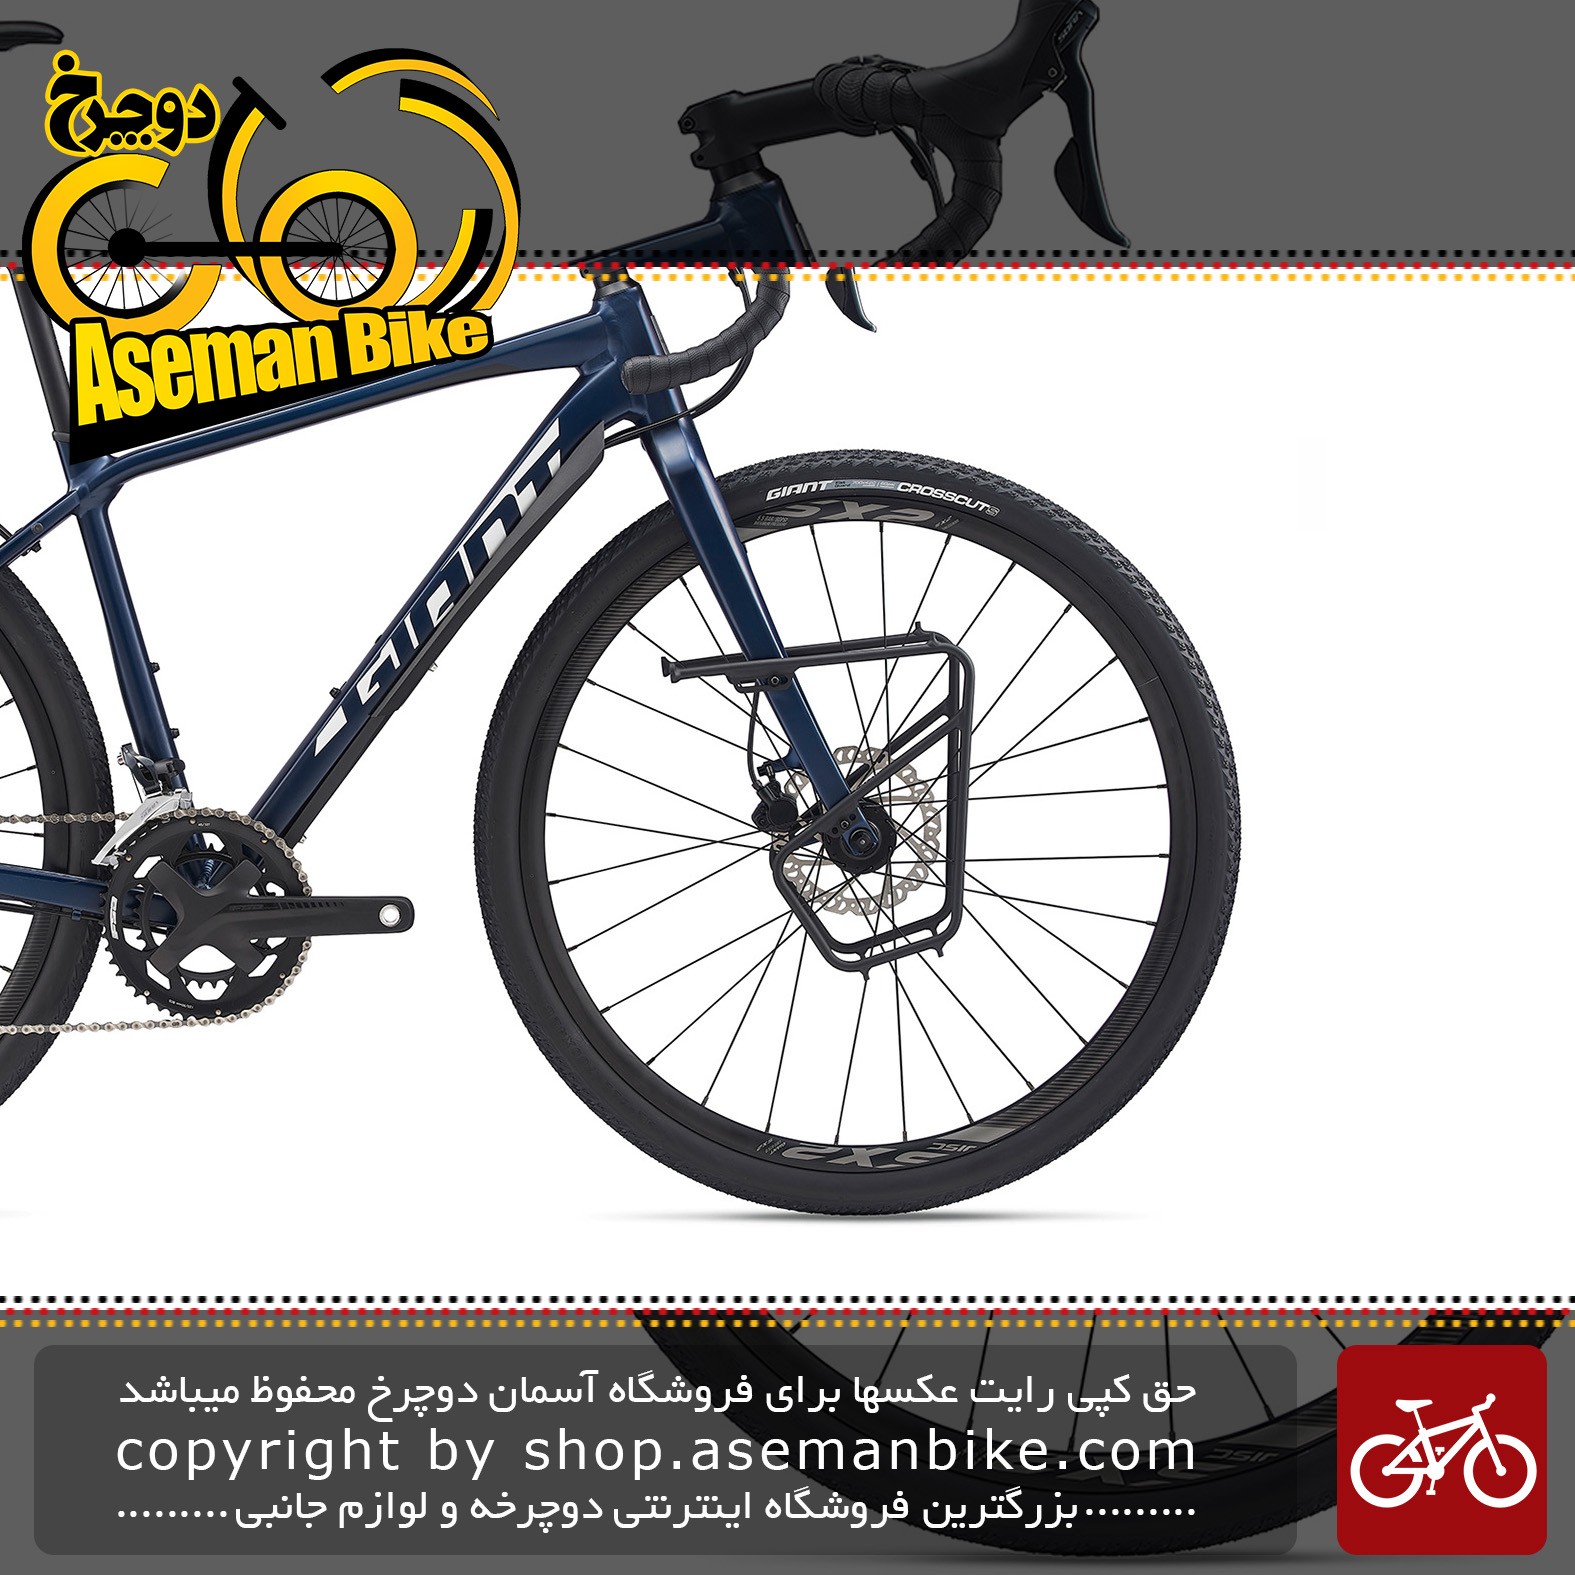 دوچرخه شهری توریستی جاینت مدل تافروود اس ال آر جی ایکس 1 2020 Giant Adventure Bicycle ToughRoad SLR GX 1 2020